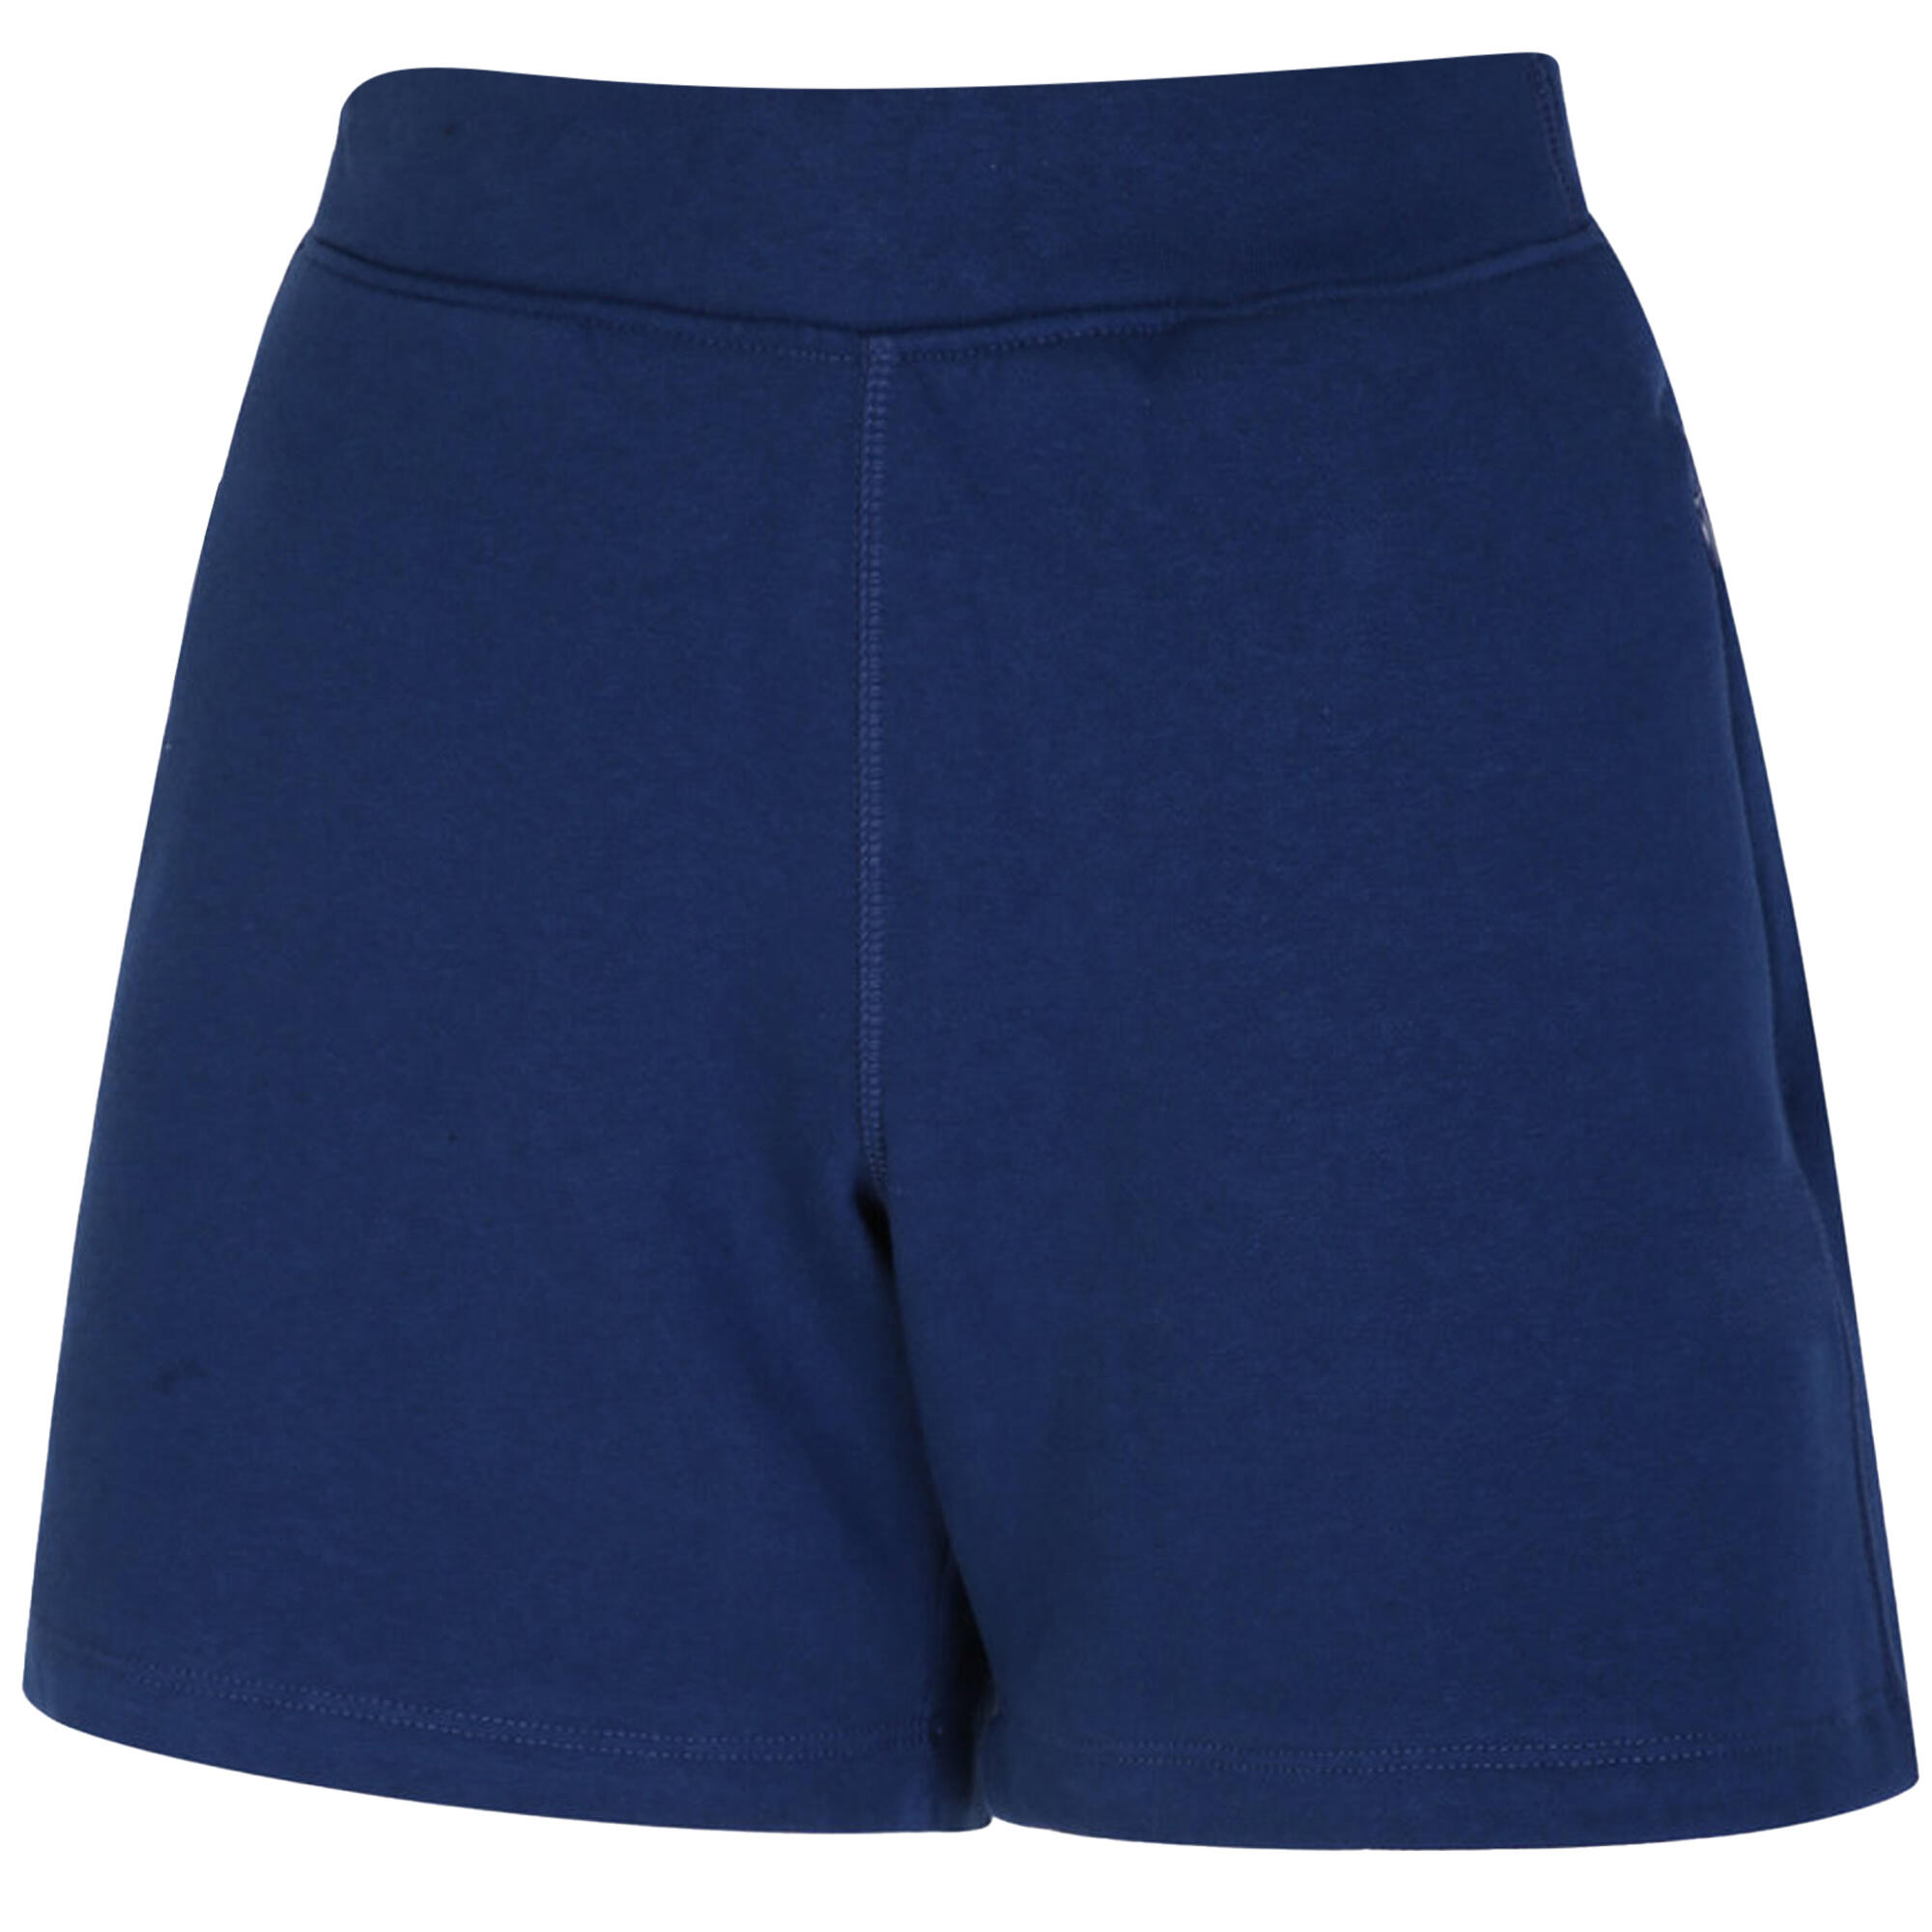 Womens/Ladies Pro Elite Fleece Shorts (Navy) 2/4